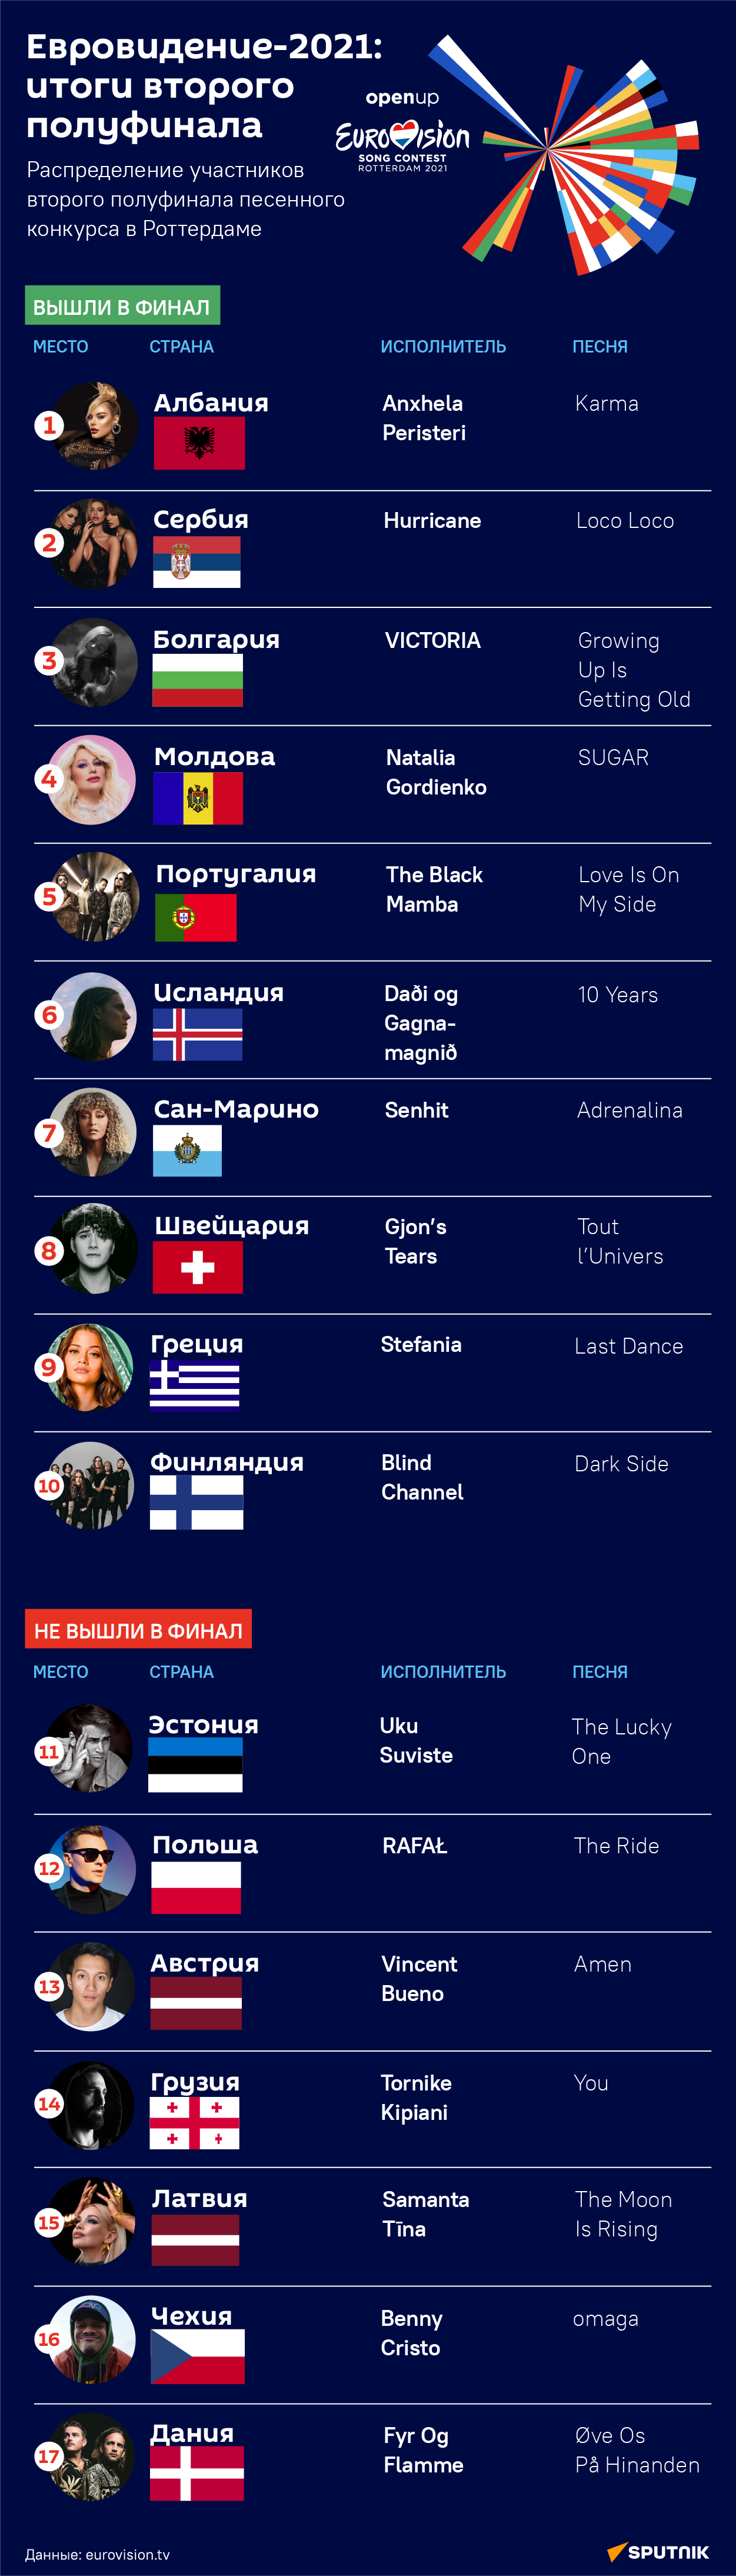 Евровидение-2021: итоги второго полуфинала - Sputnik Таджикистан